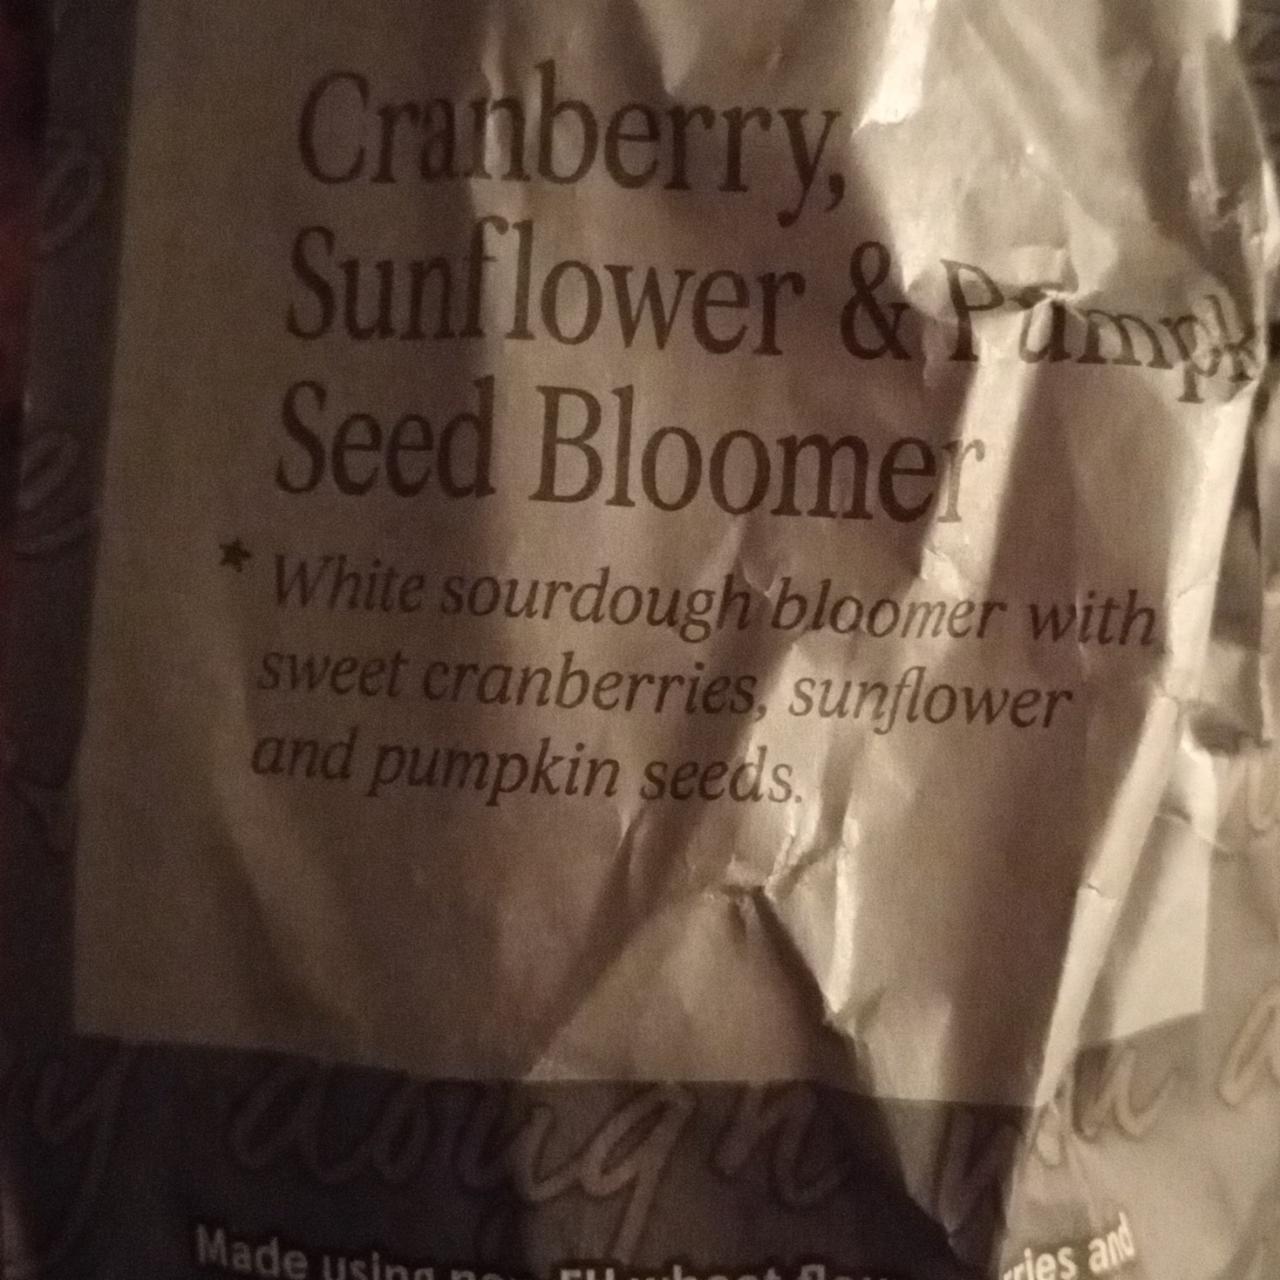 Fotografie - Cranberry, sunflower a pumpkin seed Bloomer Tesco